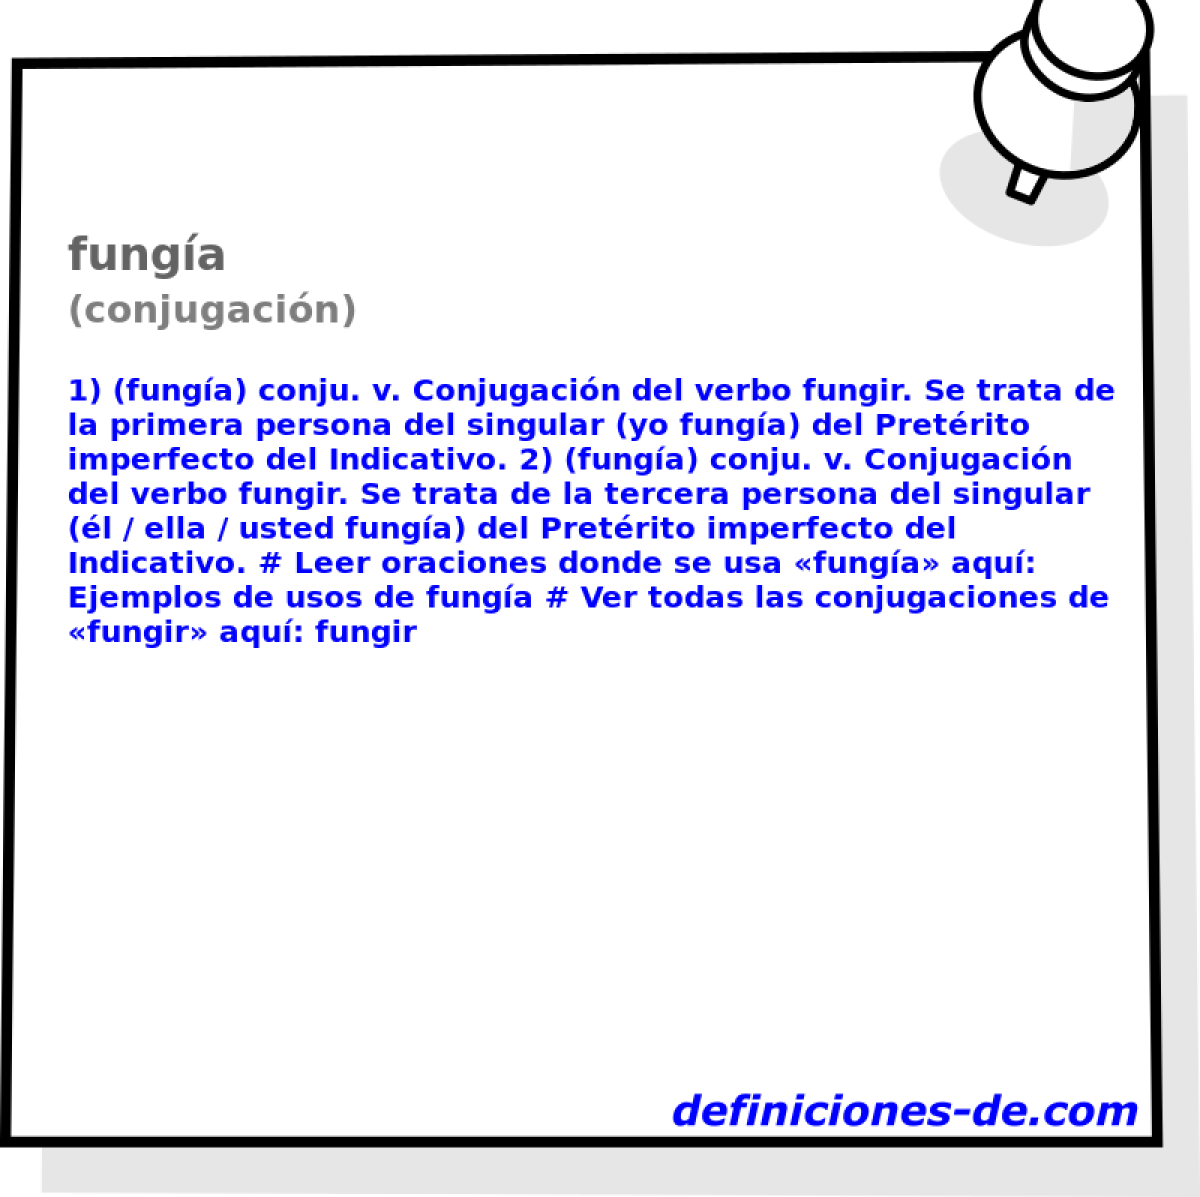 funga (conjugacin)